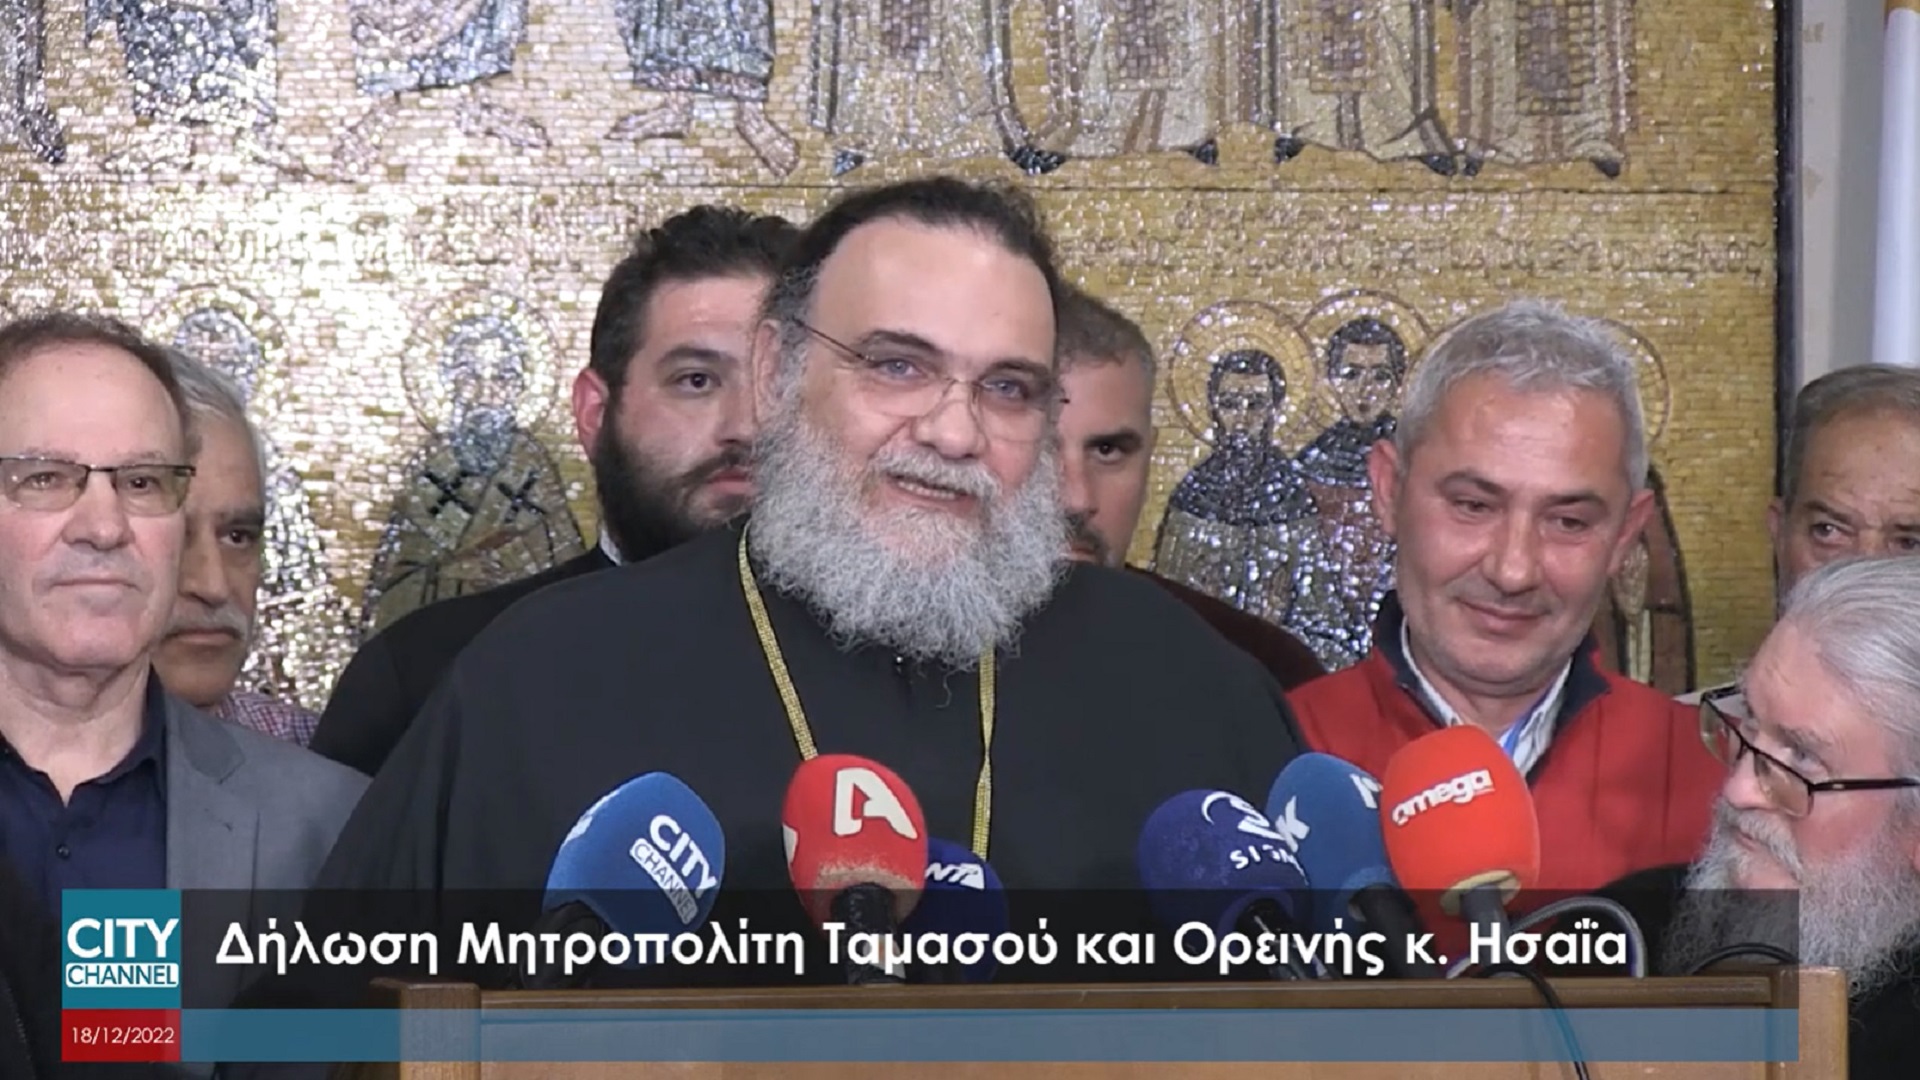 Αρχιεπισκοπικές εκλογές: Δηλώσεις Μητροπολίτη Ταμασού Ησαΐα μετά την ανακοίνωση των αποτελεσμάτων